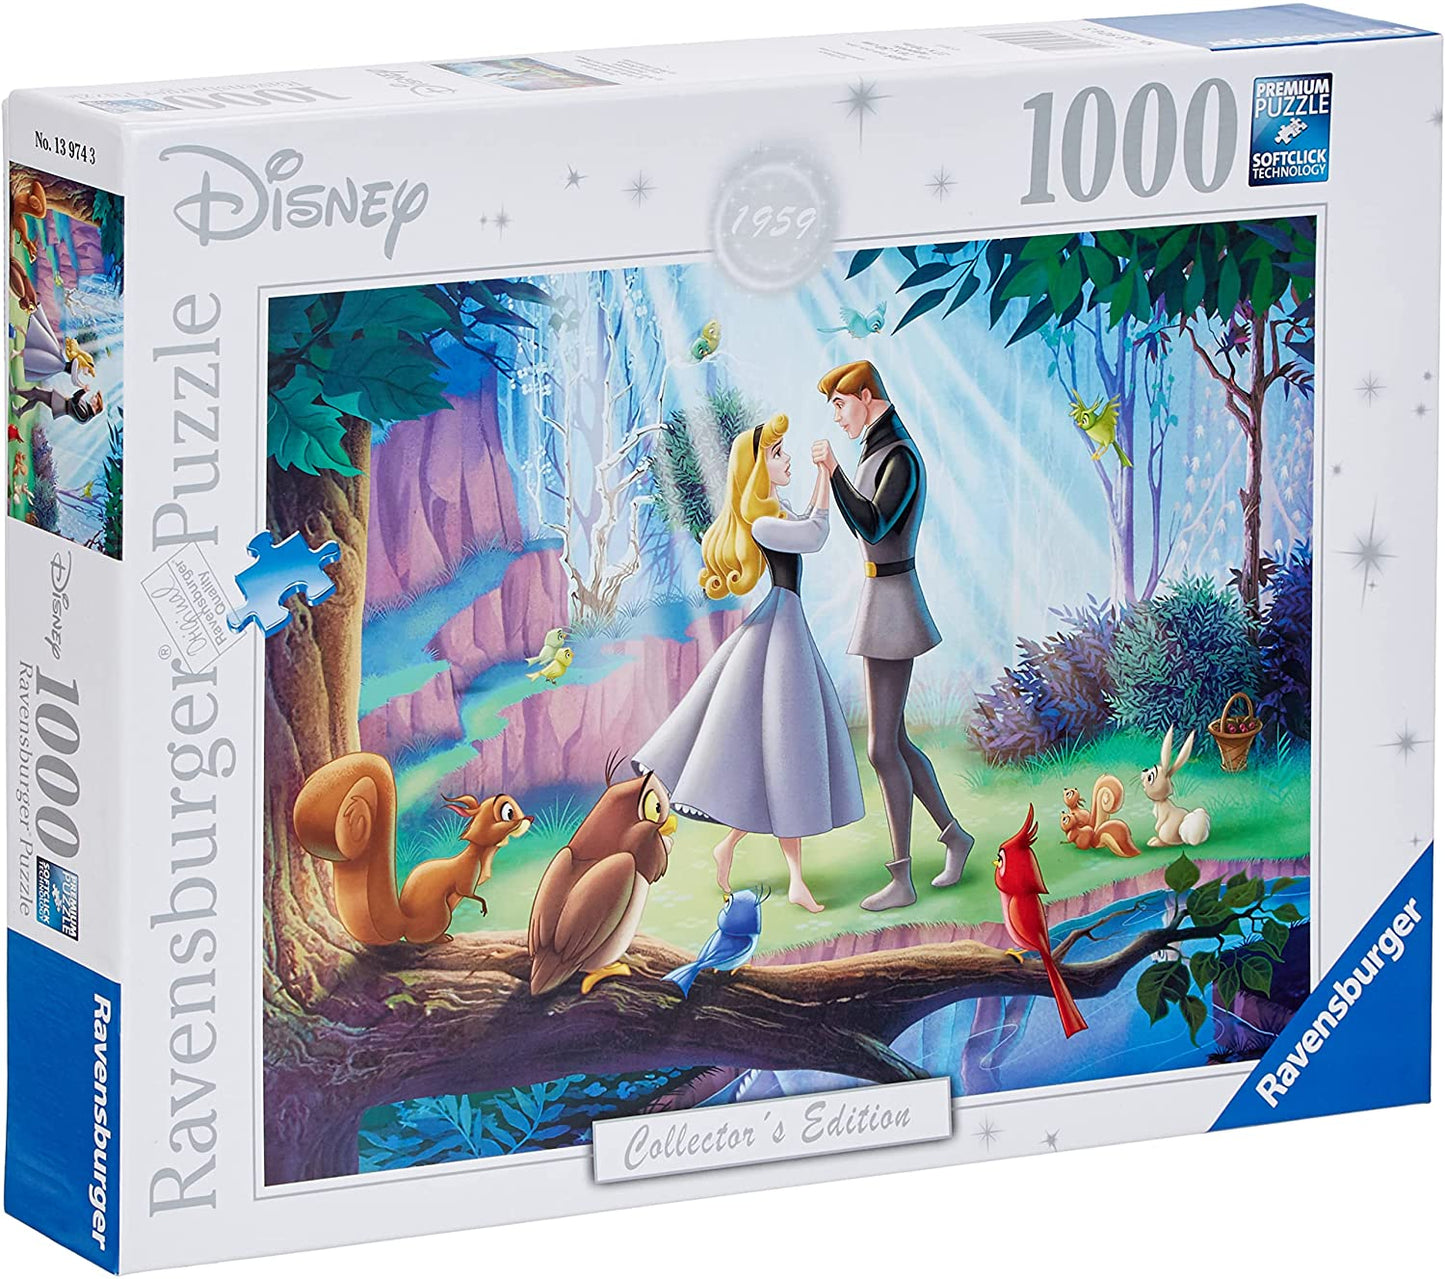 Doornroosje van Disney Collector's Edition, puzzel van 1000 stukjes